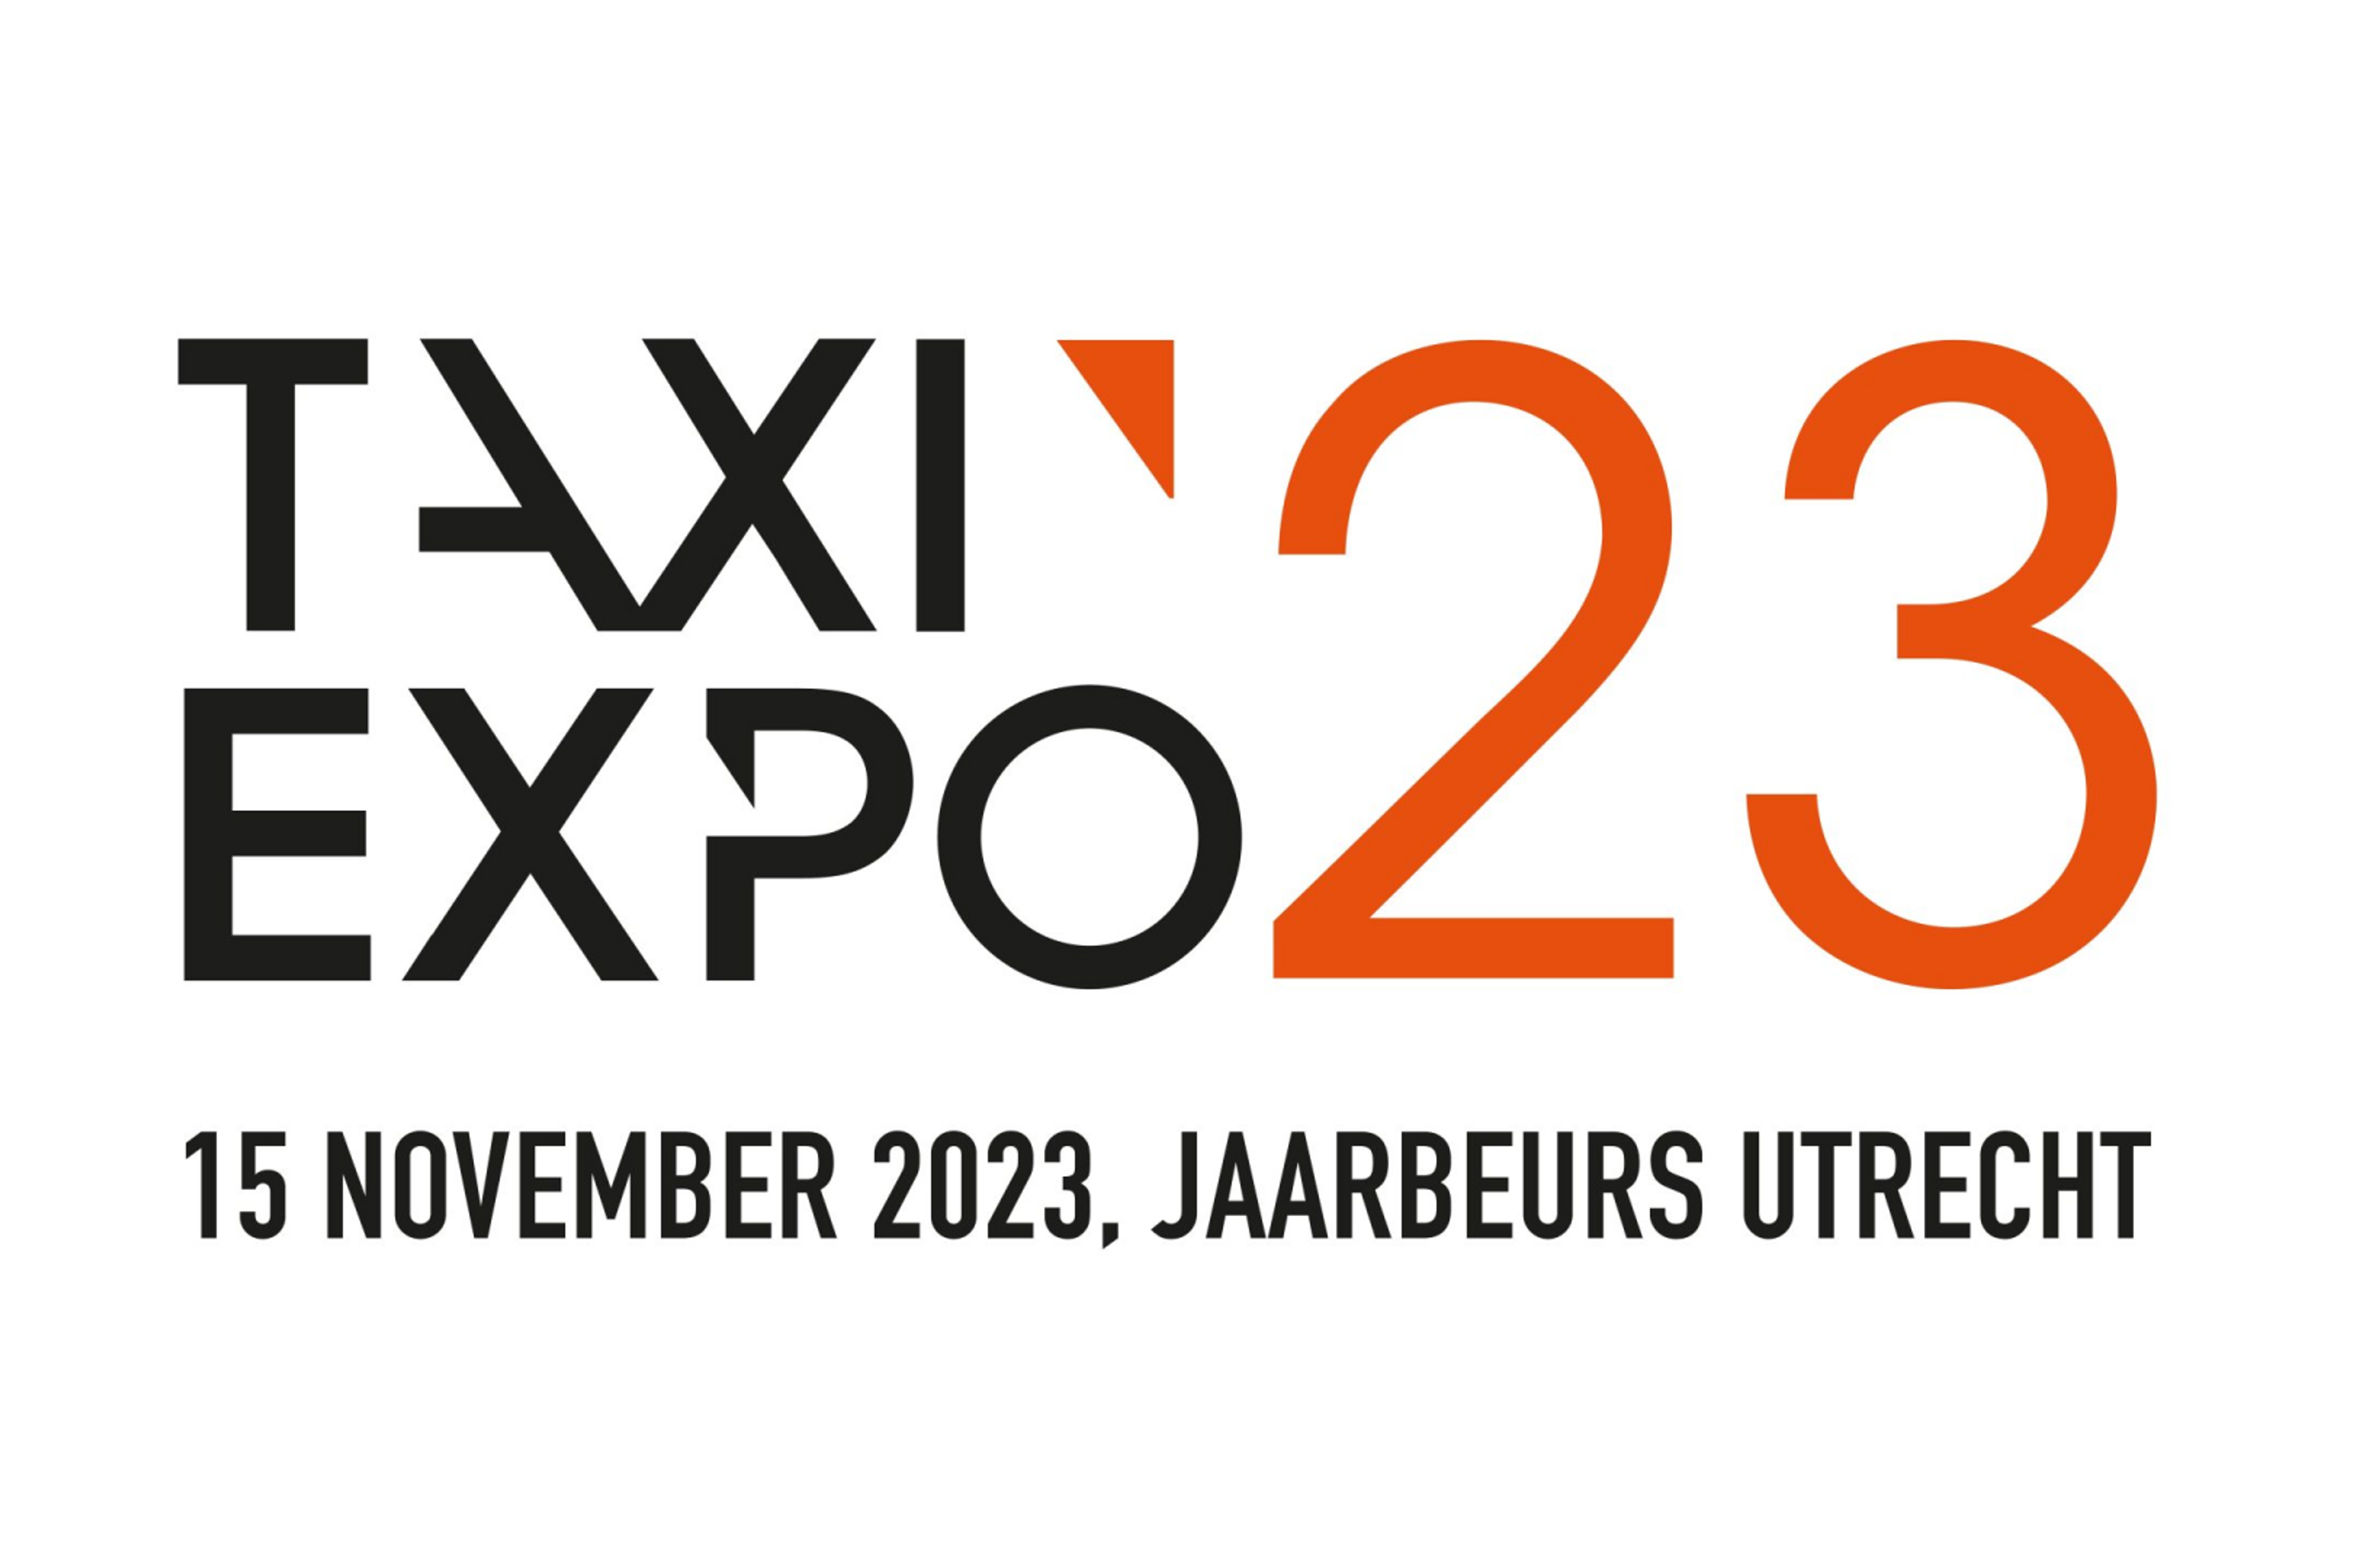 Zego genomineerd taxi expo innovatie prijs 2023